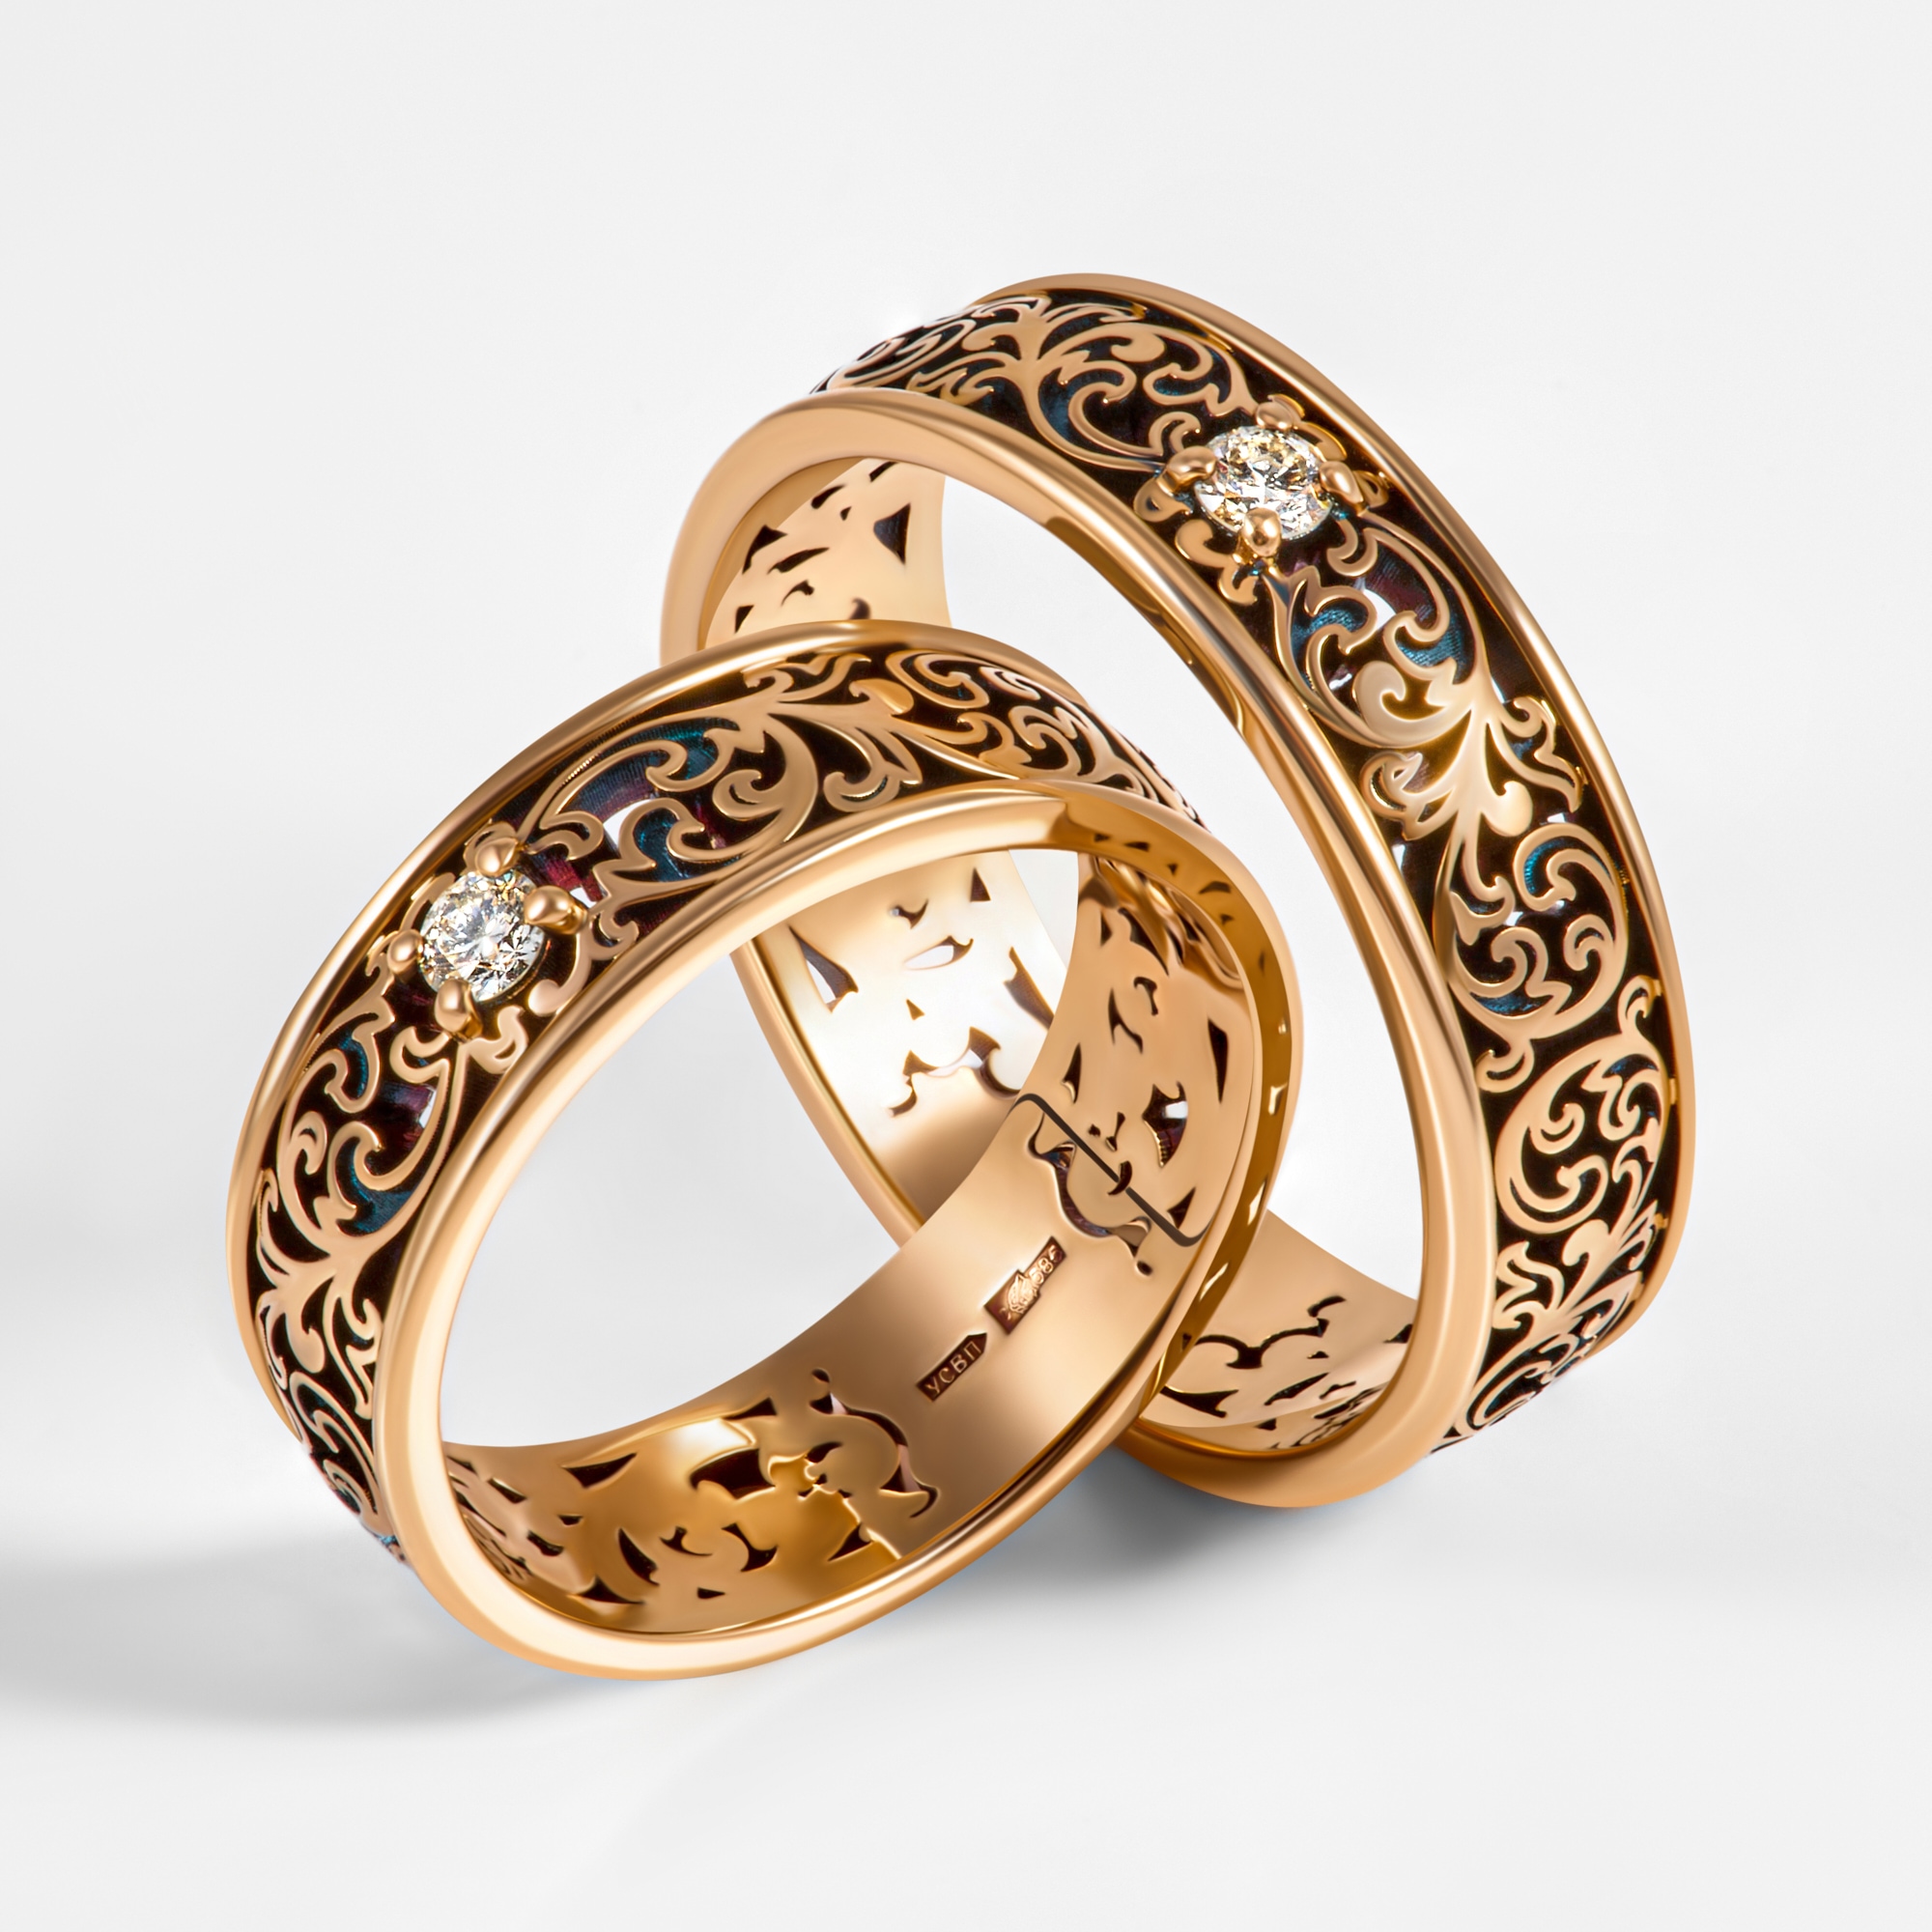 К чему снятся кольца: золотые, серебряные, с камнями...